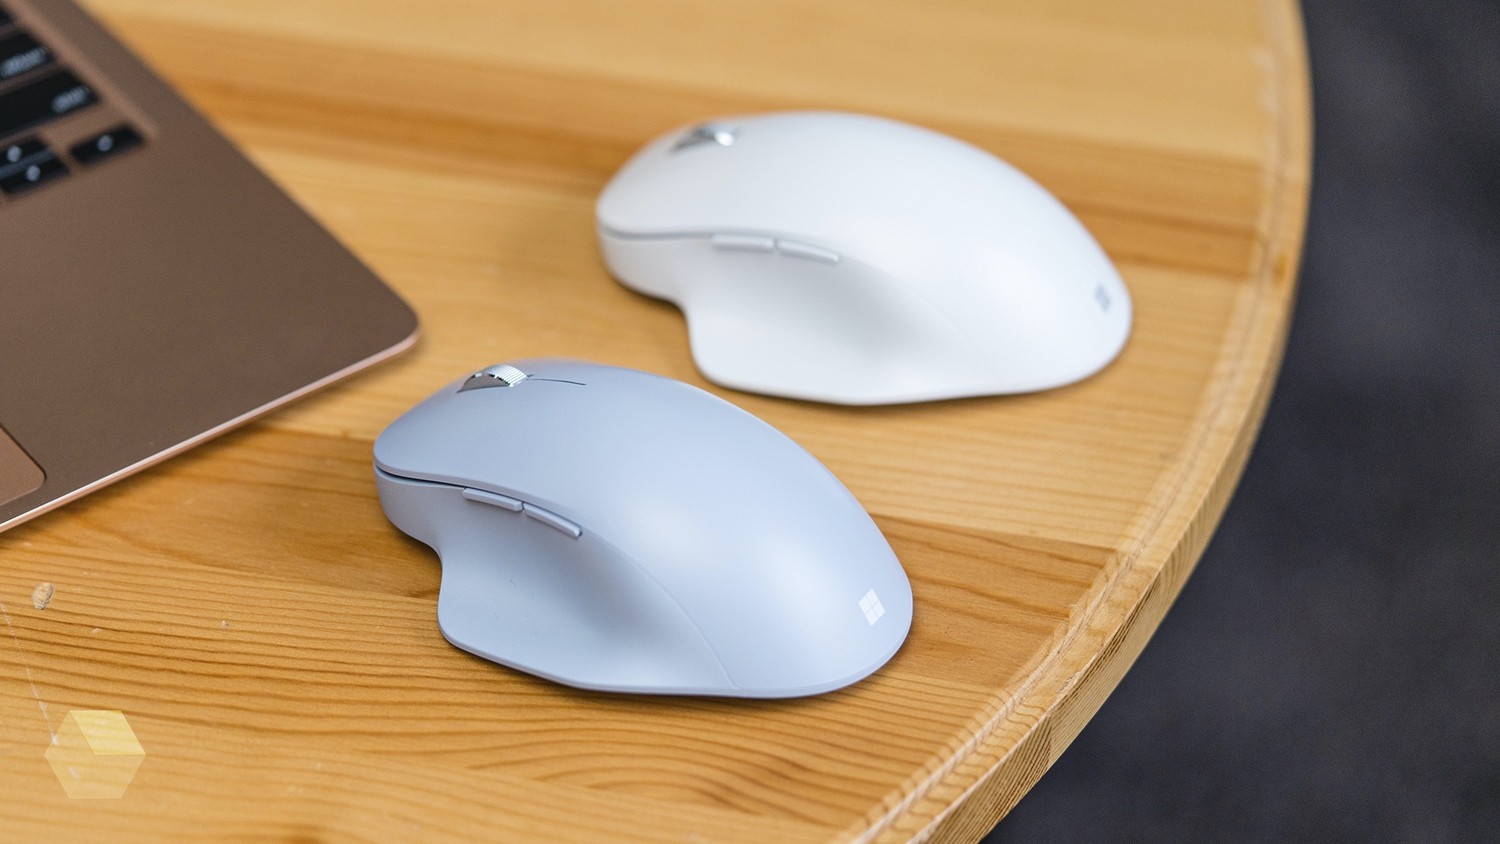 Обзор Microsoft Bluetooth Ergonomic Mouse. Действительно удобная мышь?